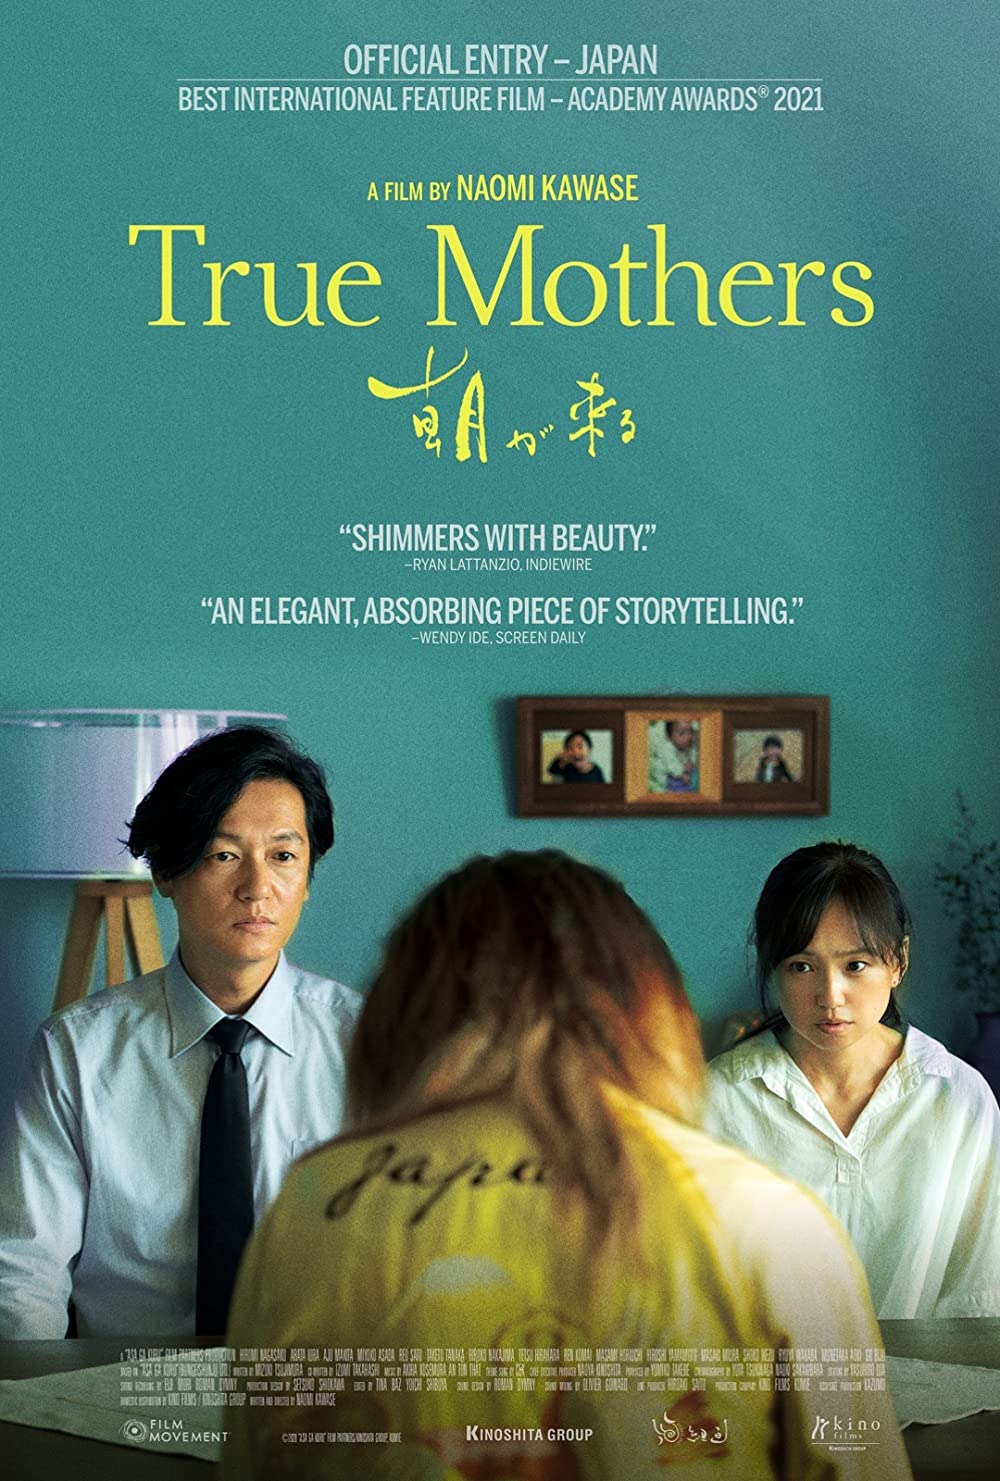 ดูหนังออนไลน์ฟรี True Mothers (Asa ga kuru) (2020) เต็มเรื่อง